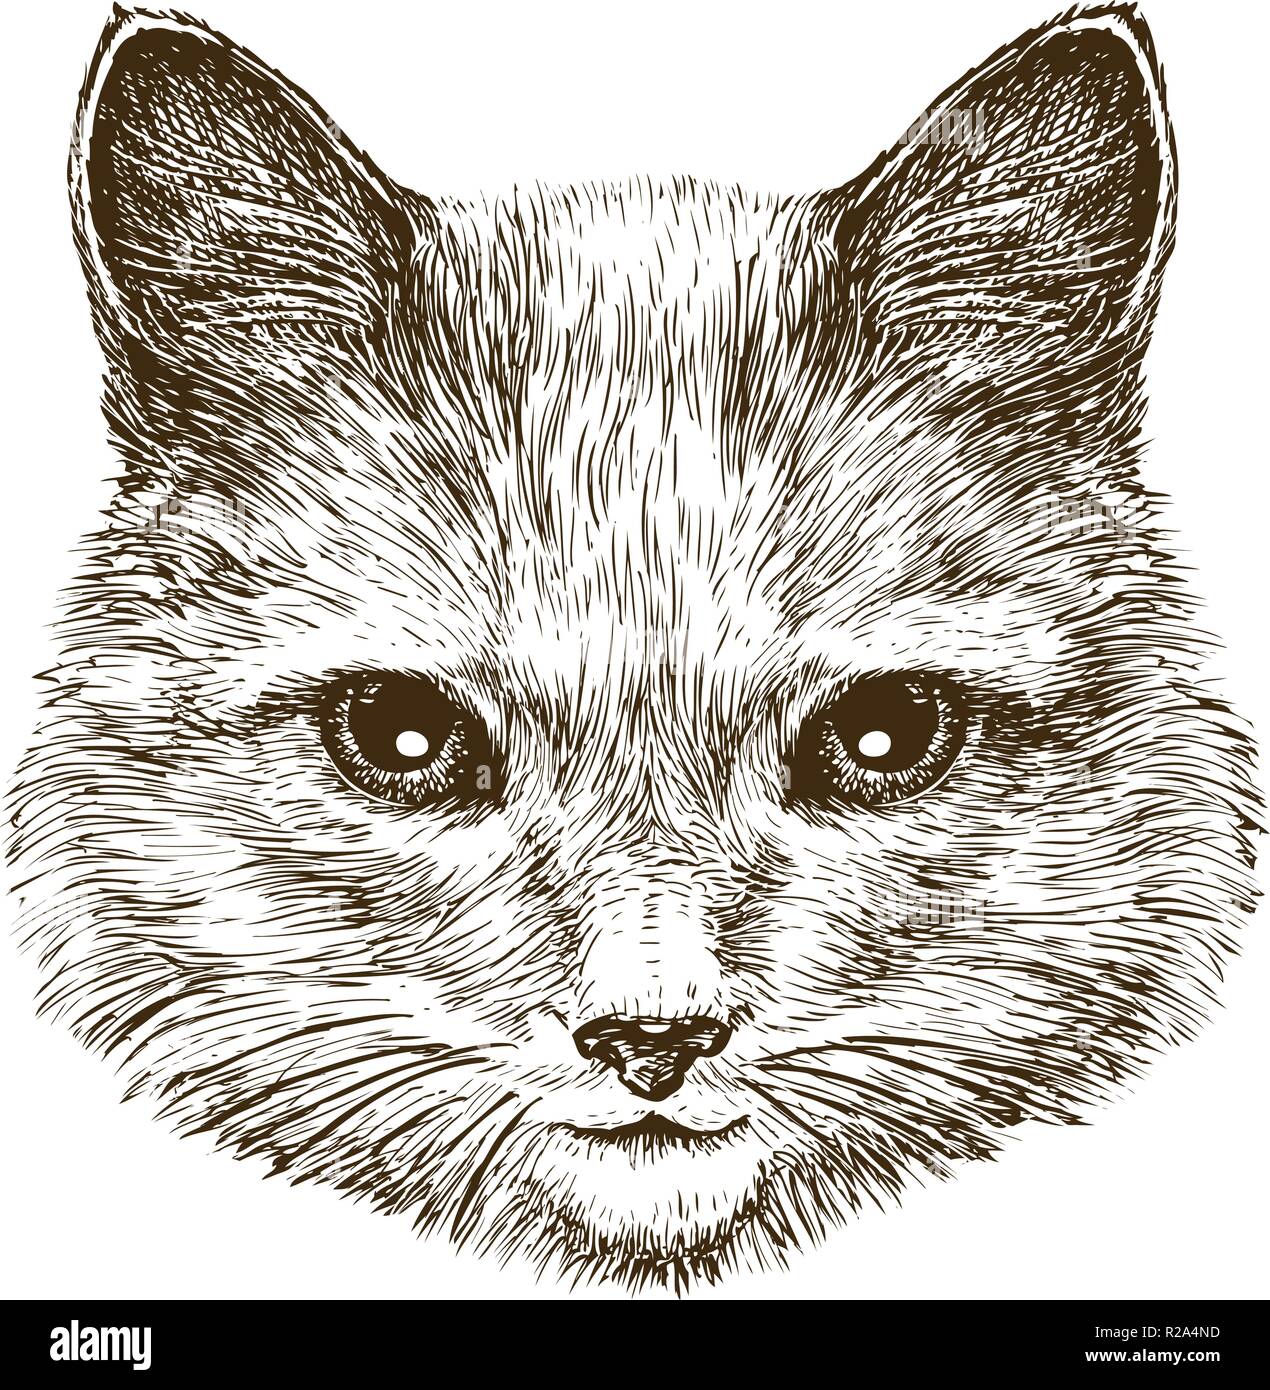 Cute kitten. Cat, pet animal sketch. Vintage vector illustration Stock Vector